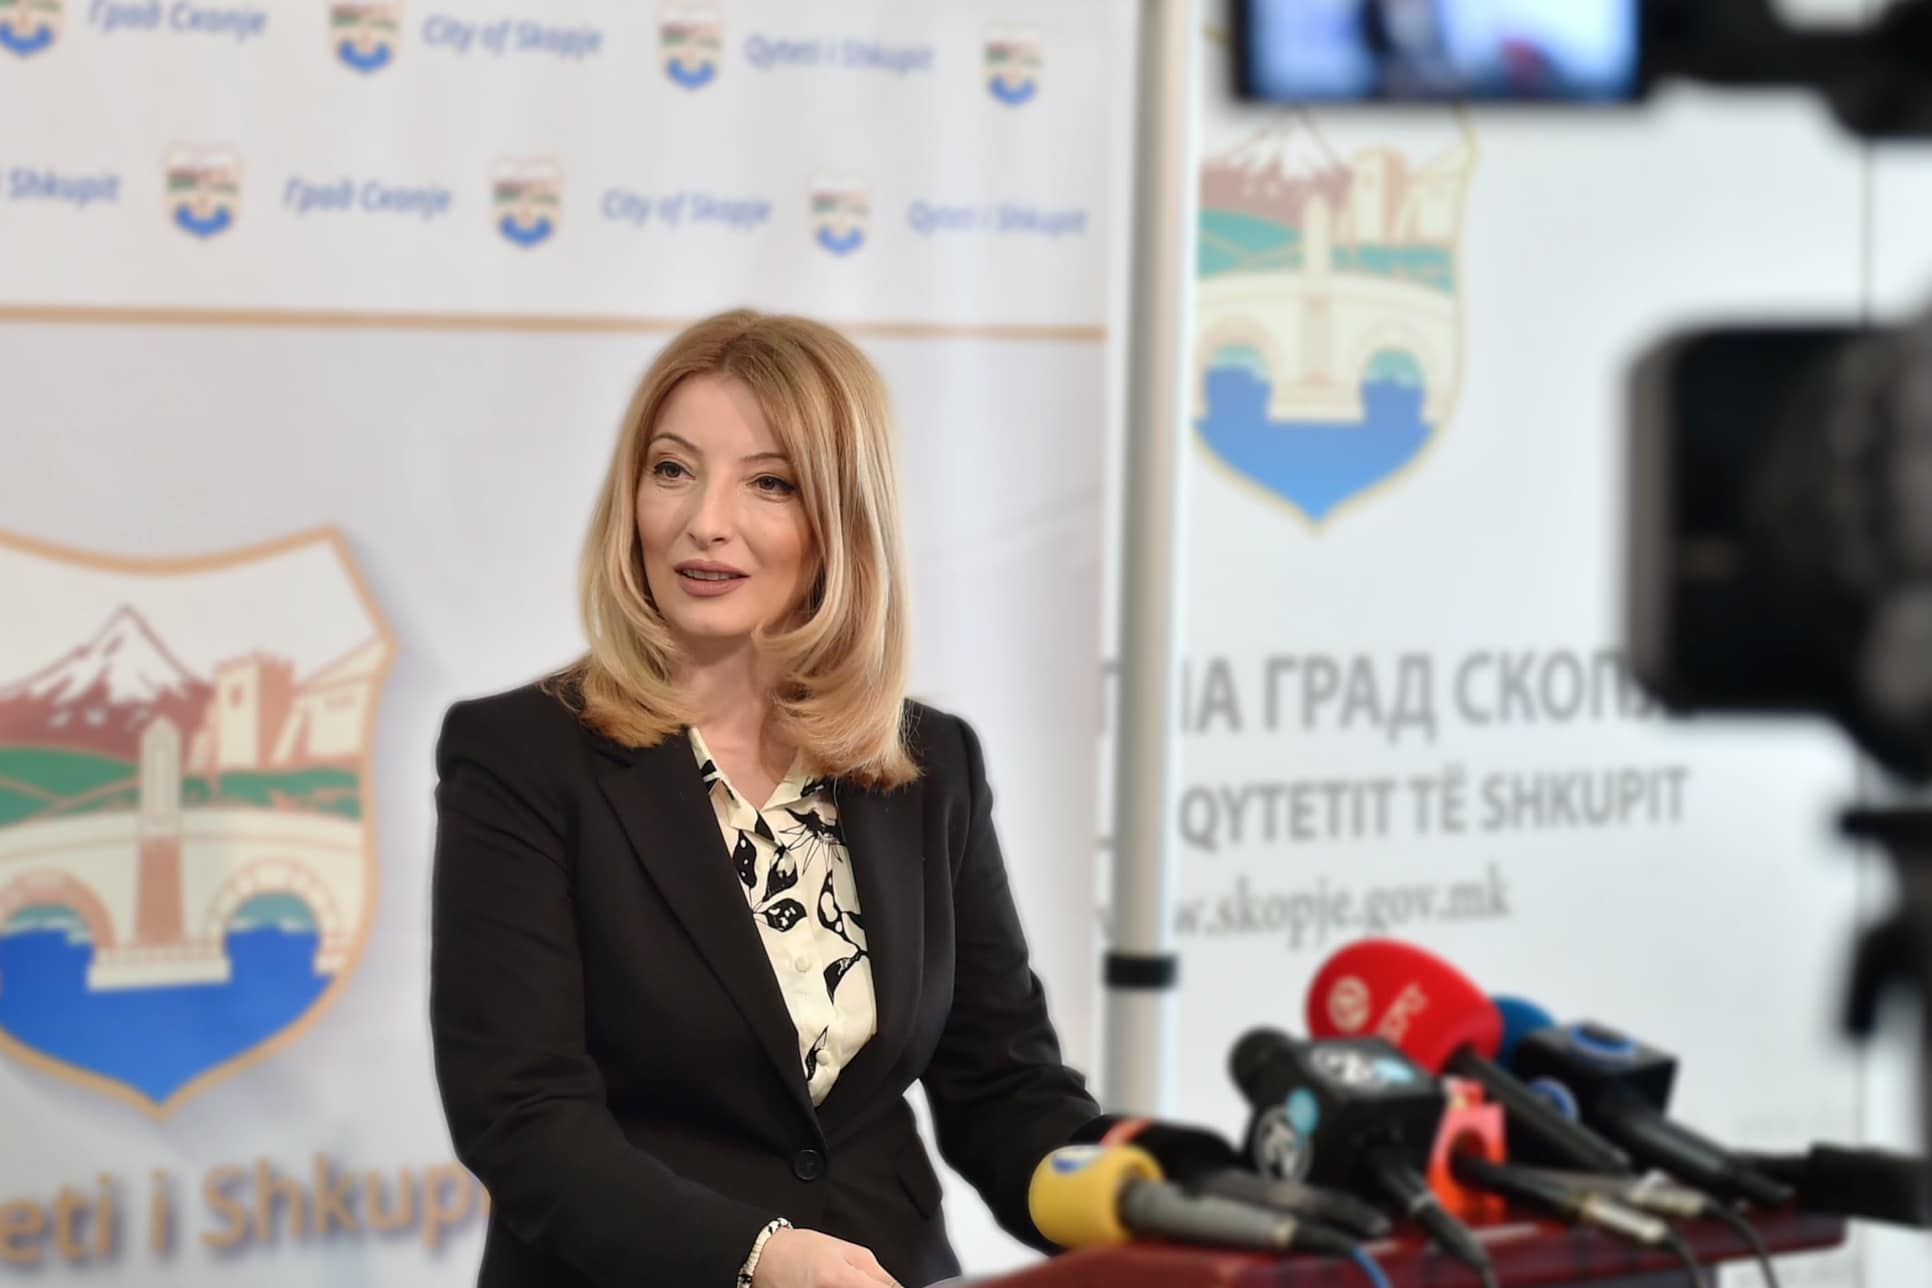 Арсовска: Очекувам сите советници да ги поддржат политиките во интерес на скопјани